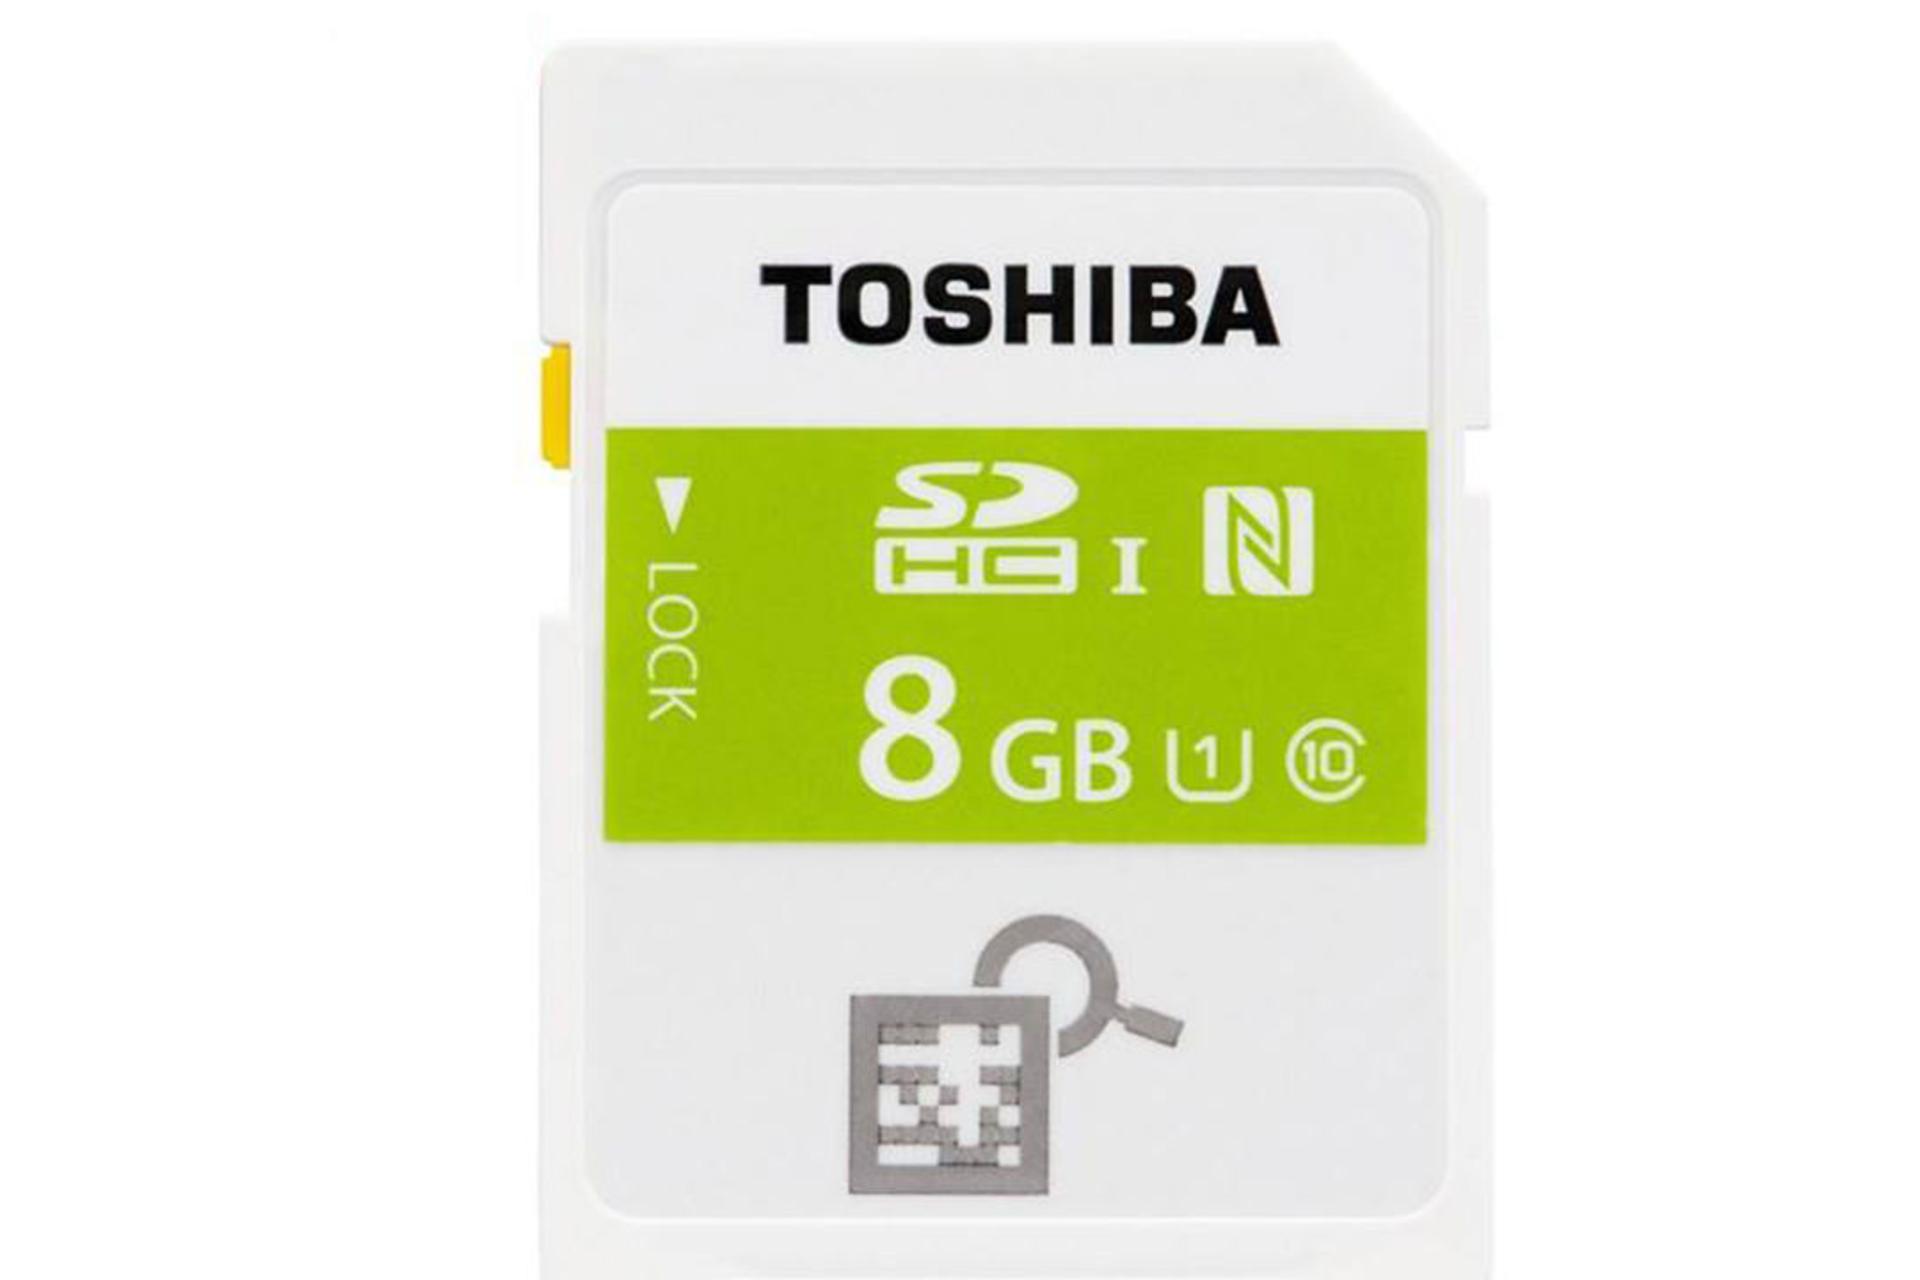 مرجع متخصصين ايران Toshiba NFC High Speed Professional SDHC Class 10 UHS-I U1 8GB